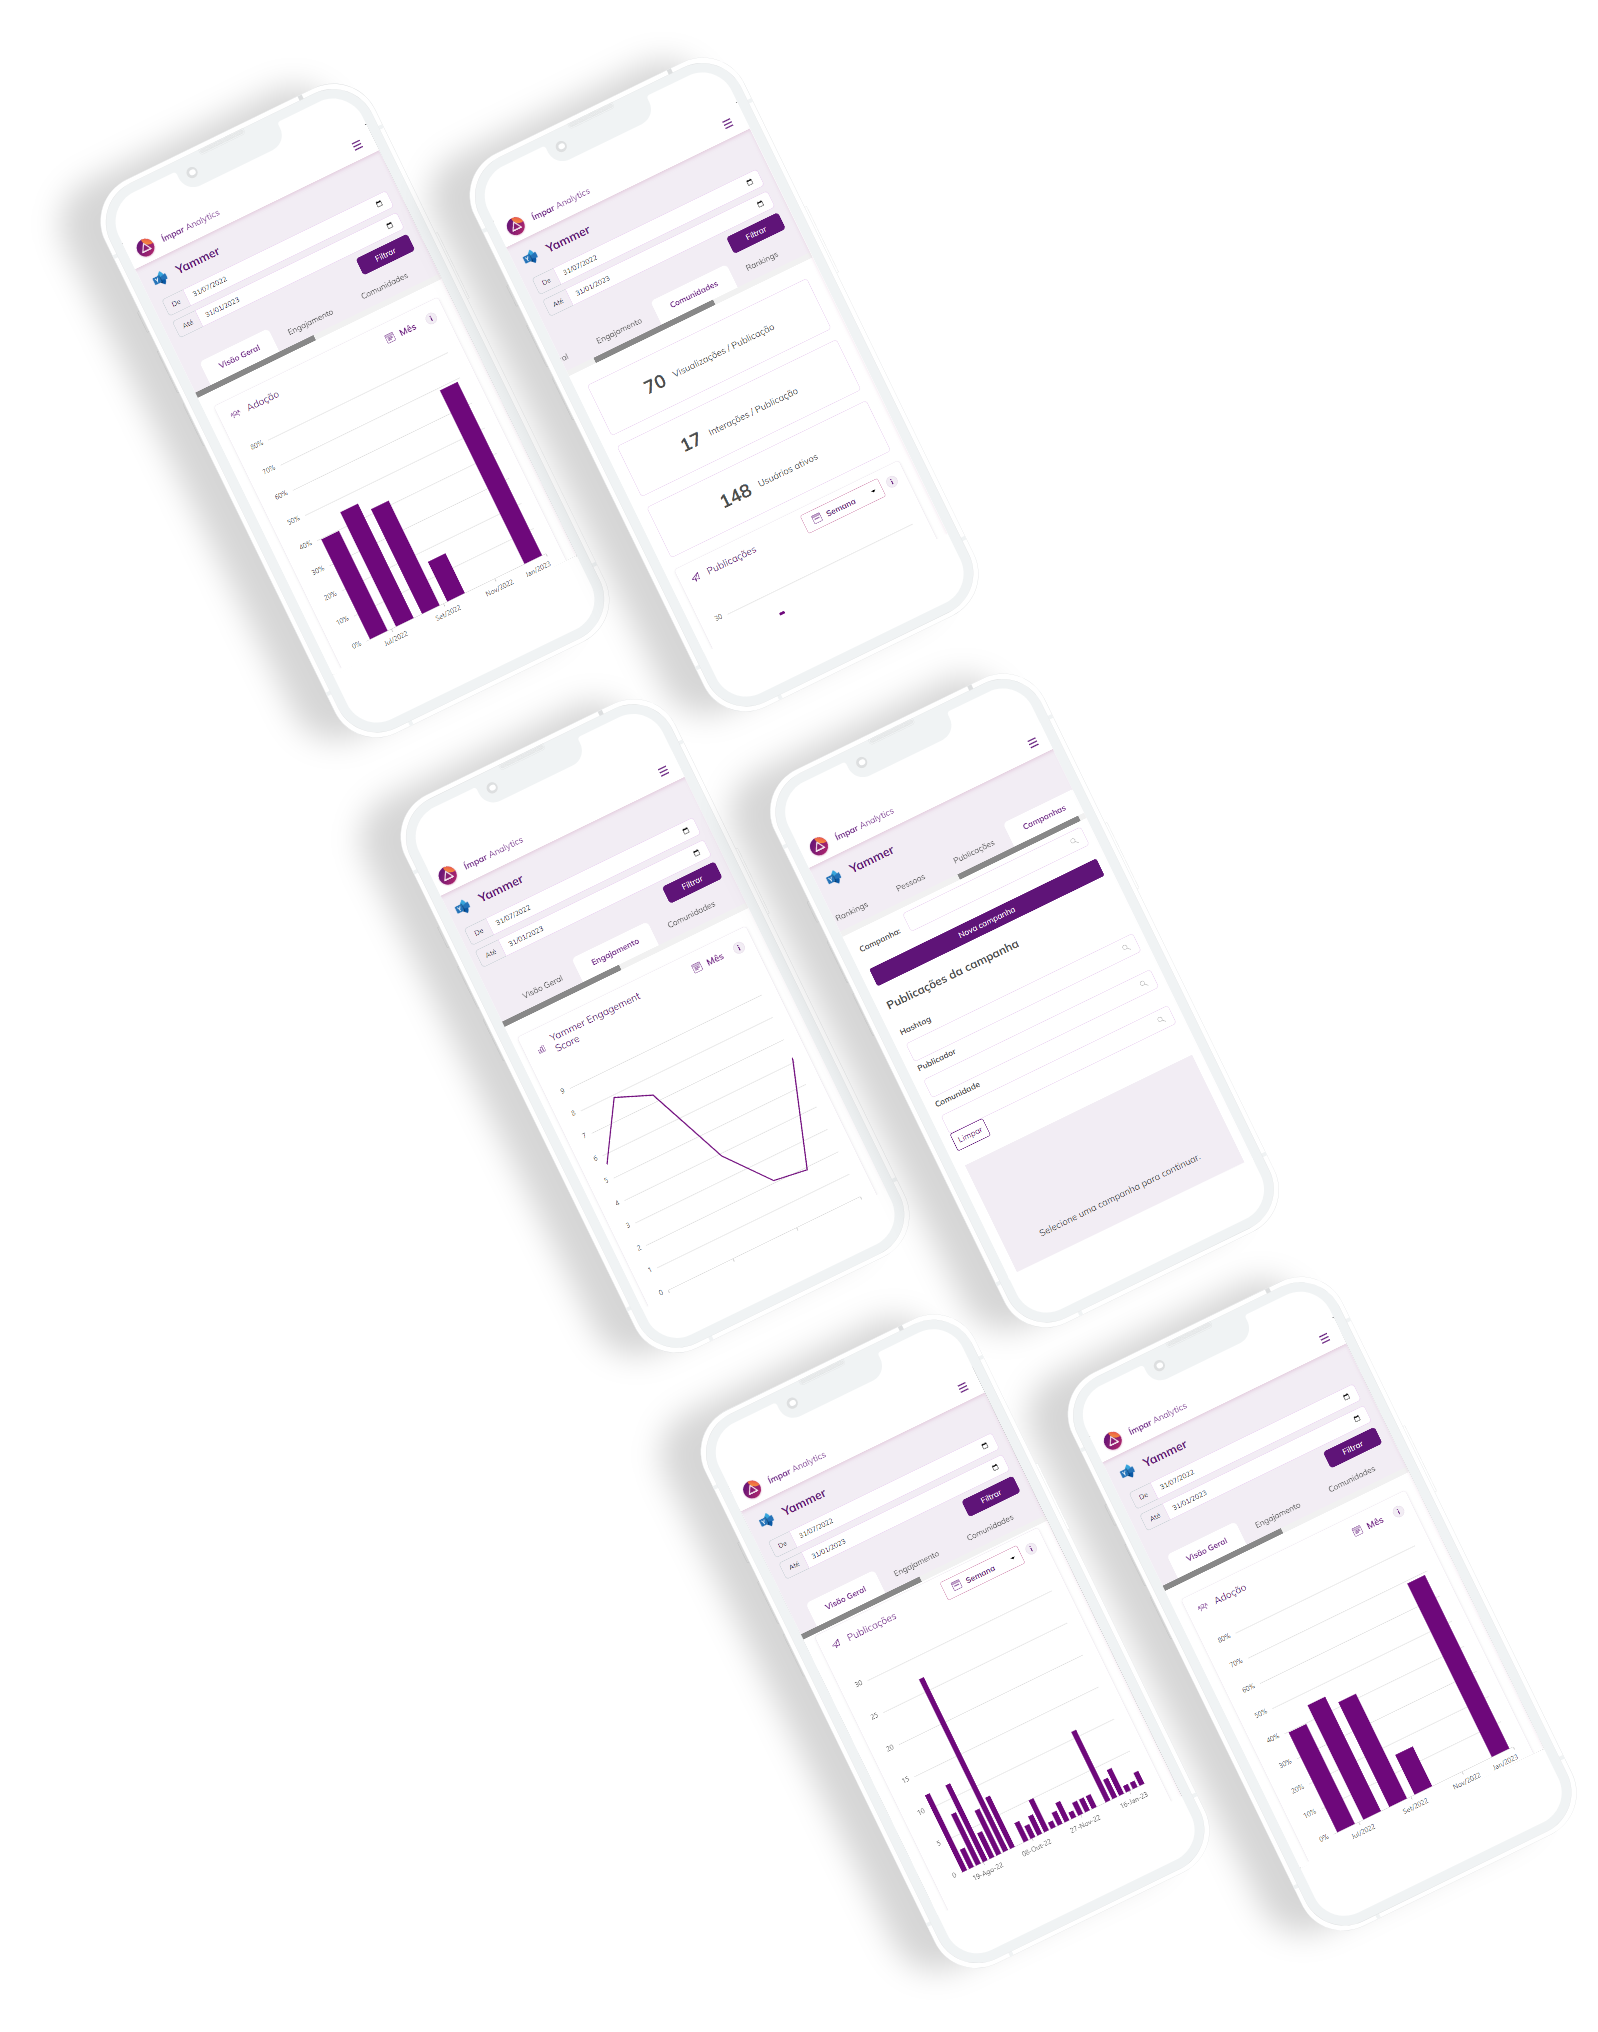 Seis telas de celulares com exemplo do yammer analytics